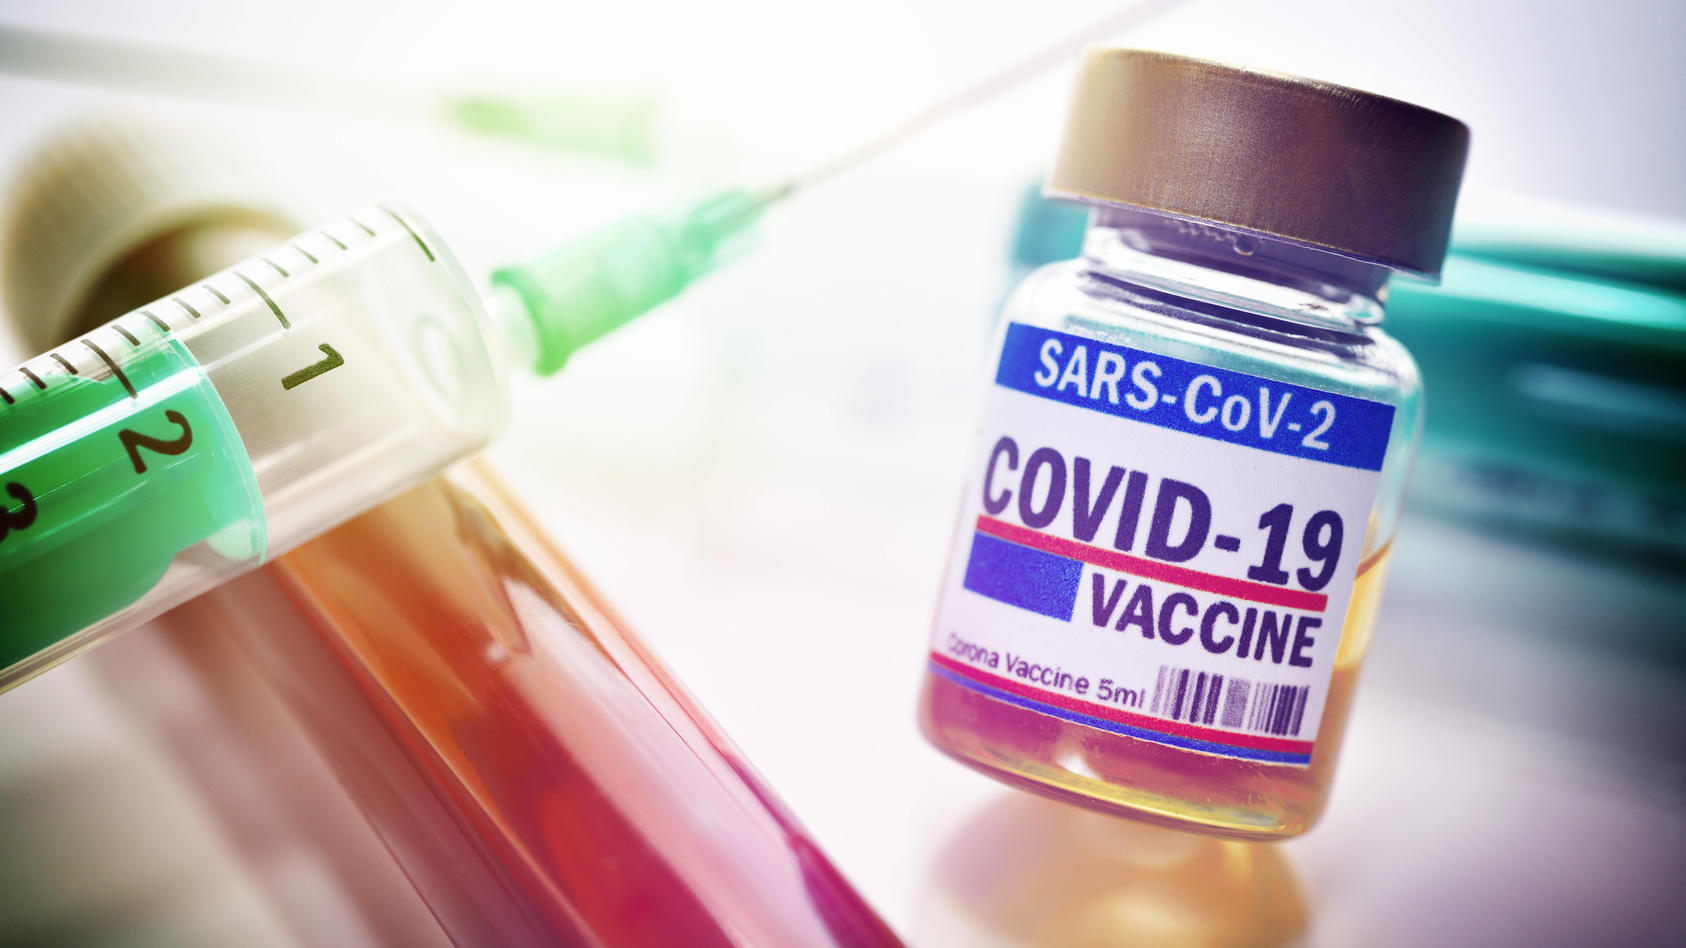  Corona-Impfstoff, Blutprobe und Impfspritzen *** Corona vaccine, blood sample and vaccine syringes